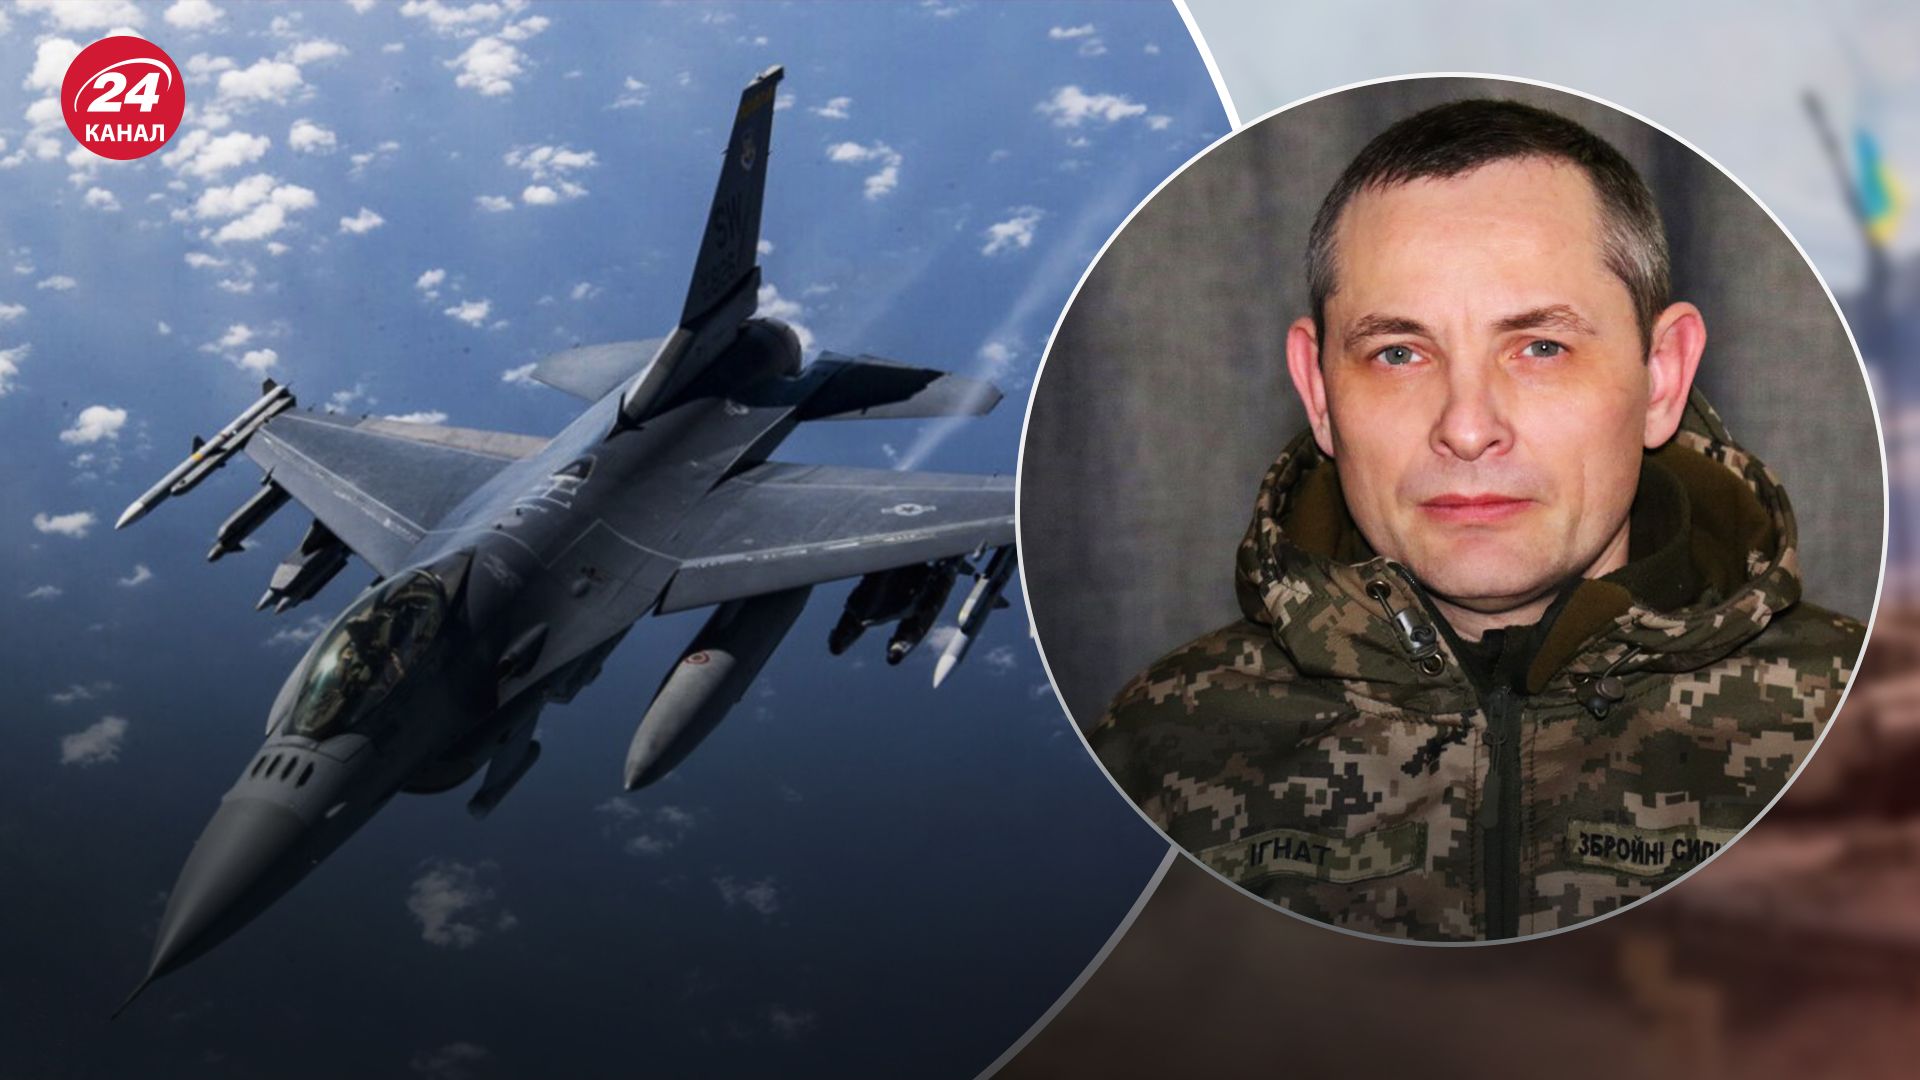 Начались ли учения украинских пилотов на F-16: в Воздушных силах расставили точки над "i" - 24 Канал